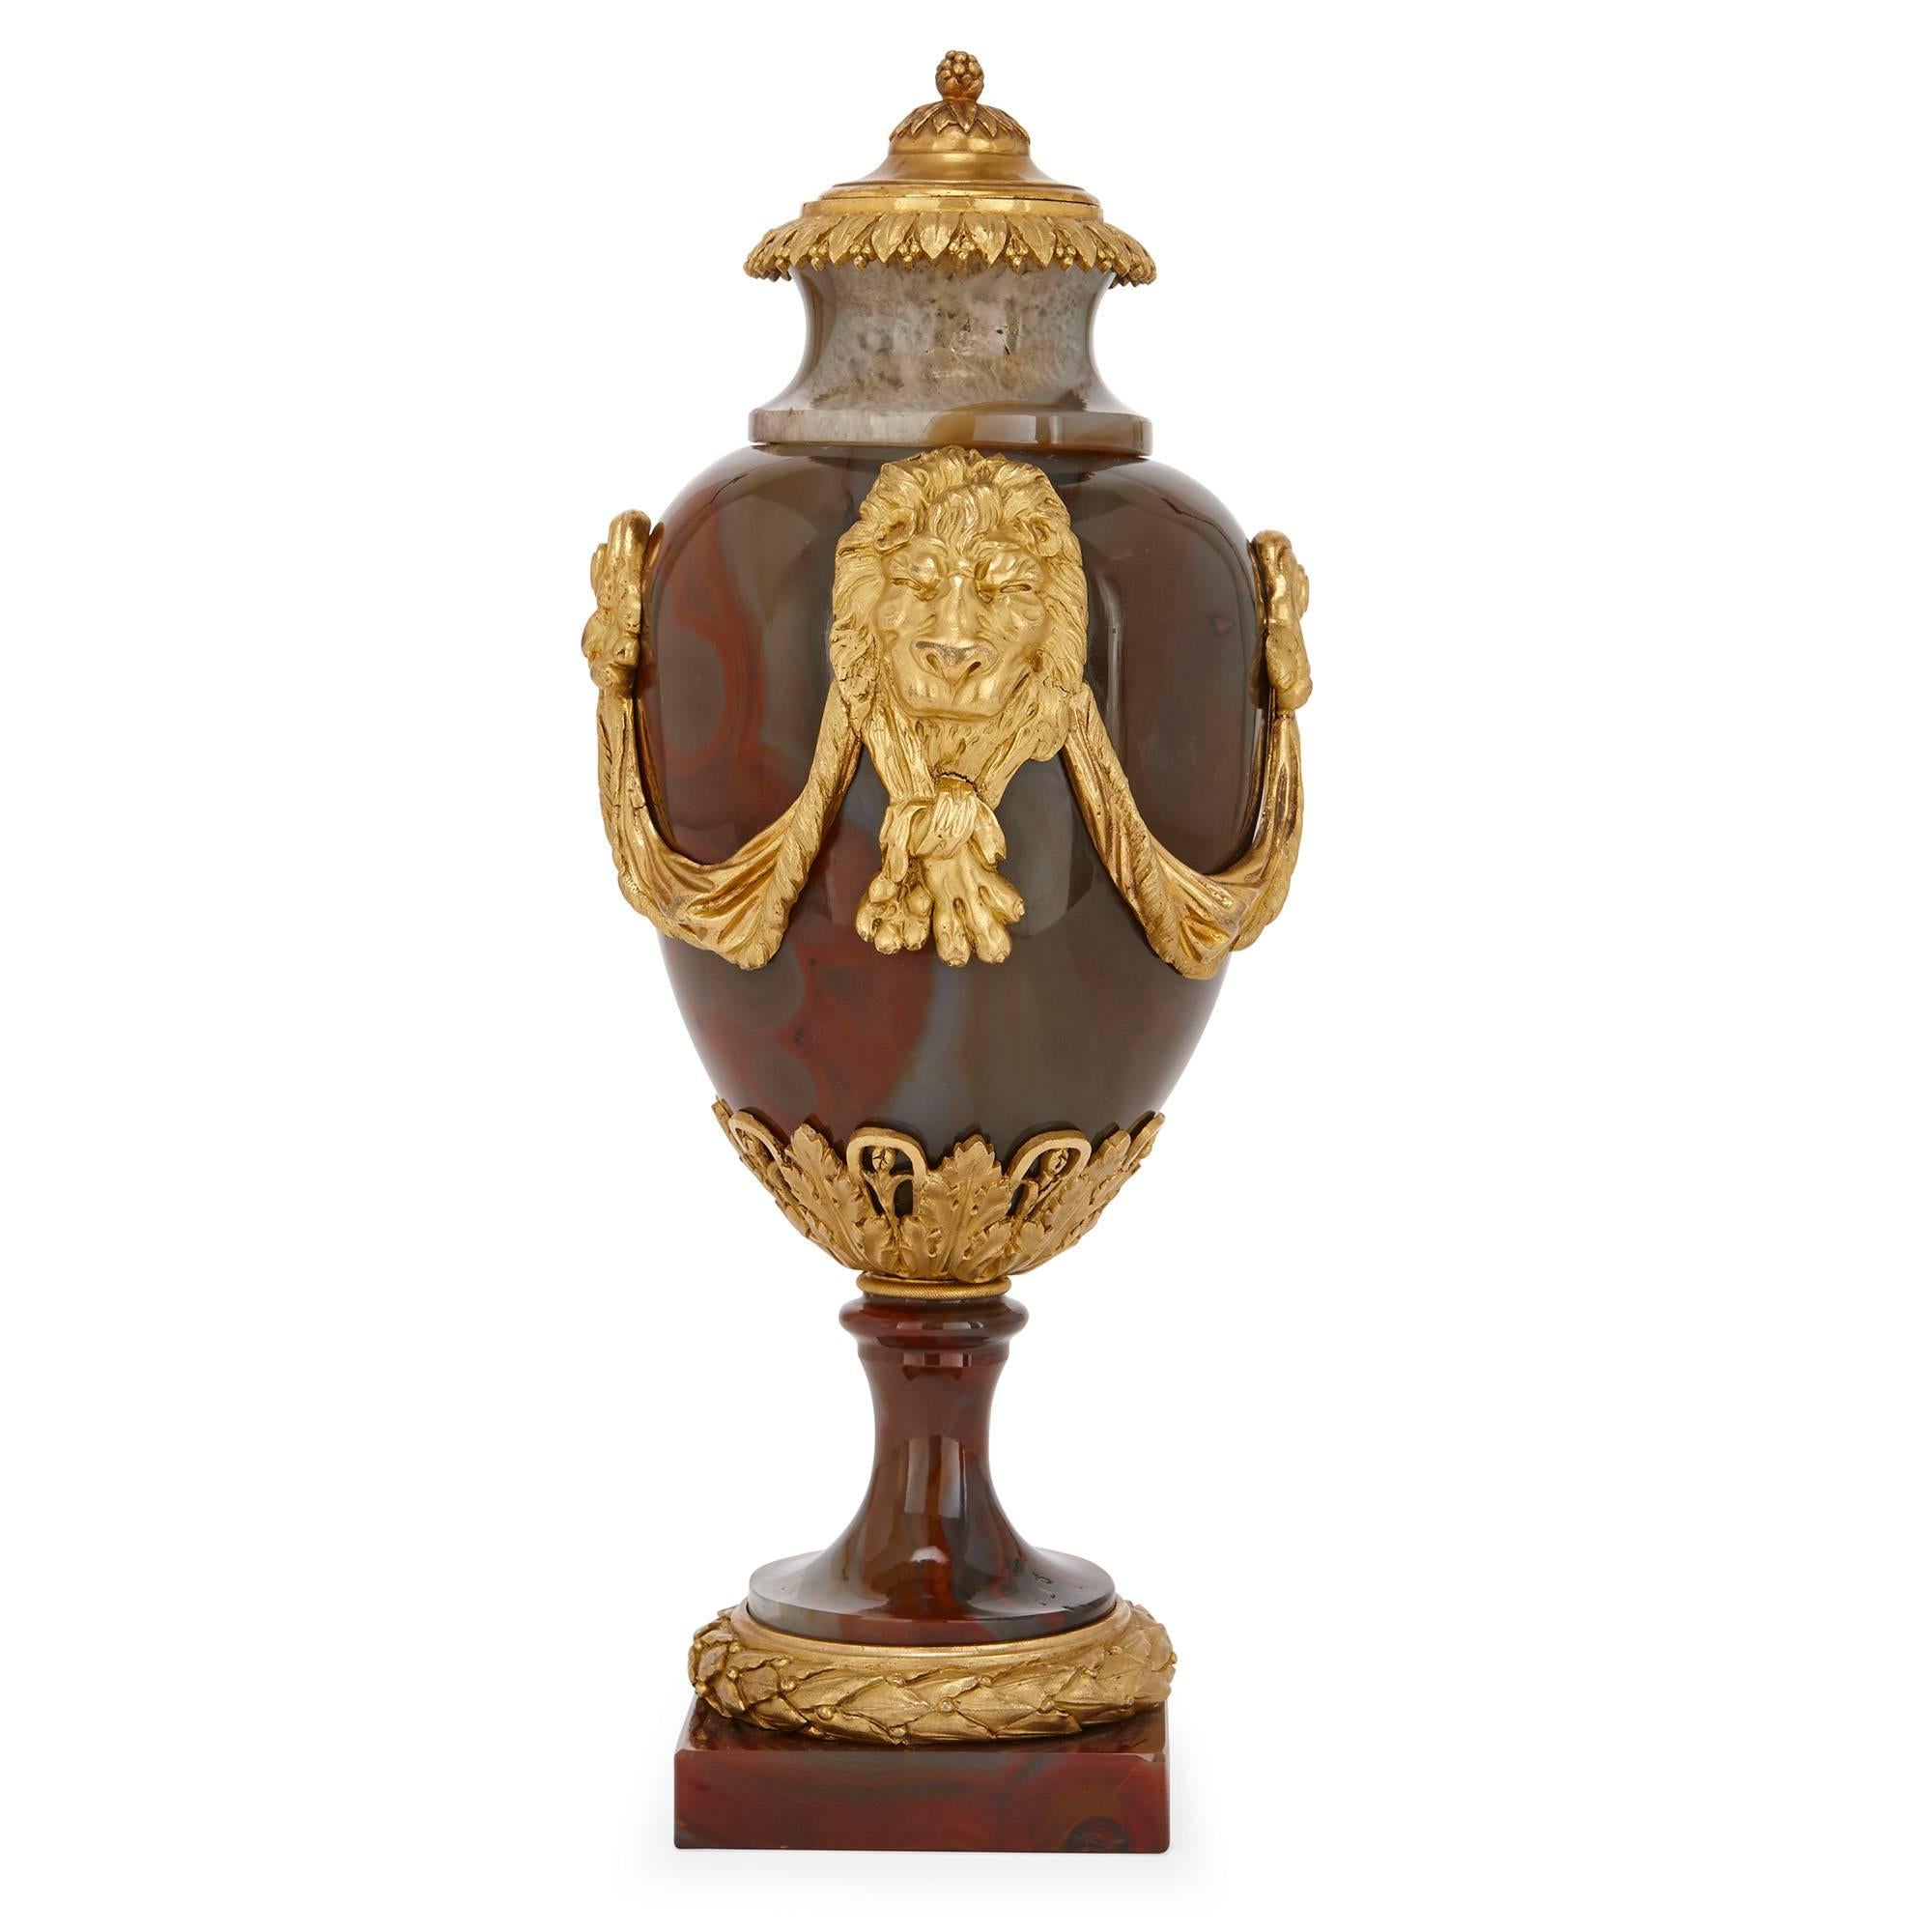 Diese wirklich außergewöhnlichen und seltenen antiken Vasen aus der Zeit Ludwigs XVI. wurden aus Achat, einem kostbaren und sehr begehrten Stein, geschnitzt. Die Vasen stehen auf quadratischen Achatsockeln mit vergoldeten Bronzesockeln mit